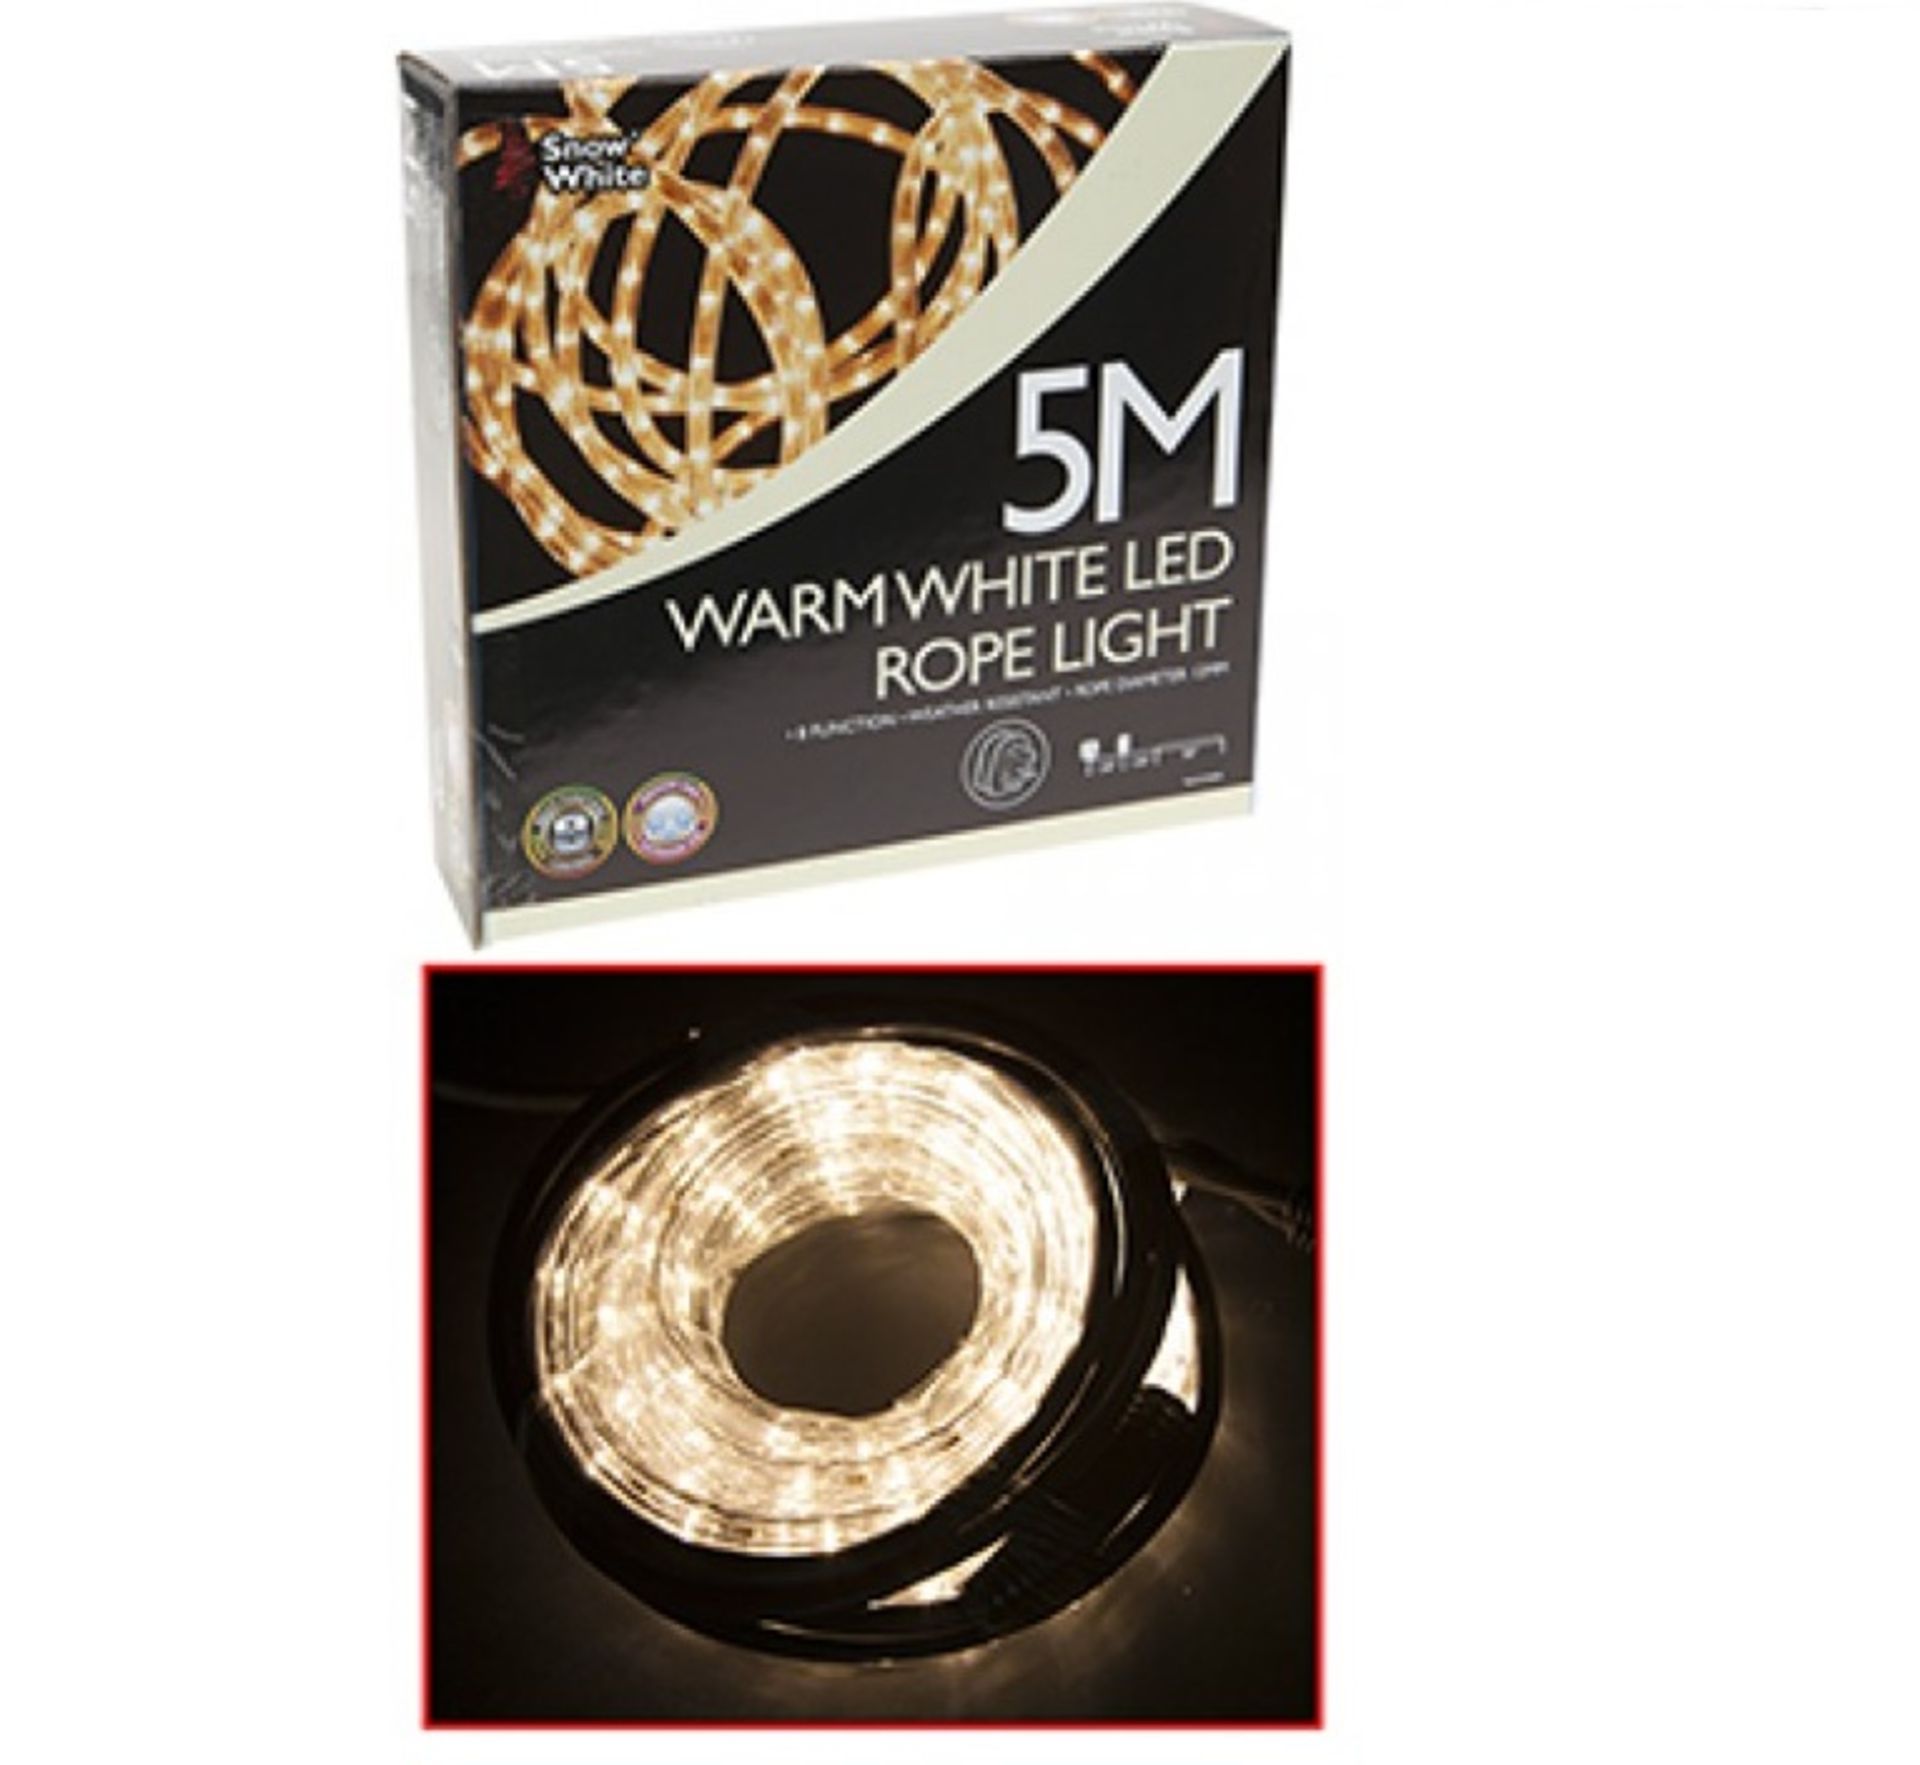 V Brand New 5M Multi Function Warm White LED Rope Light